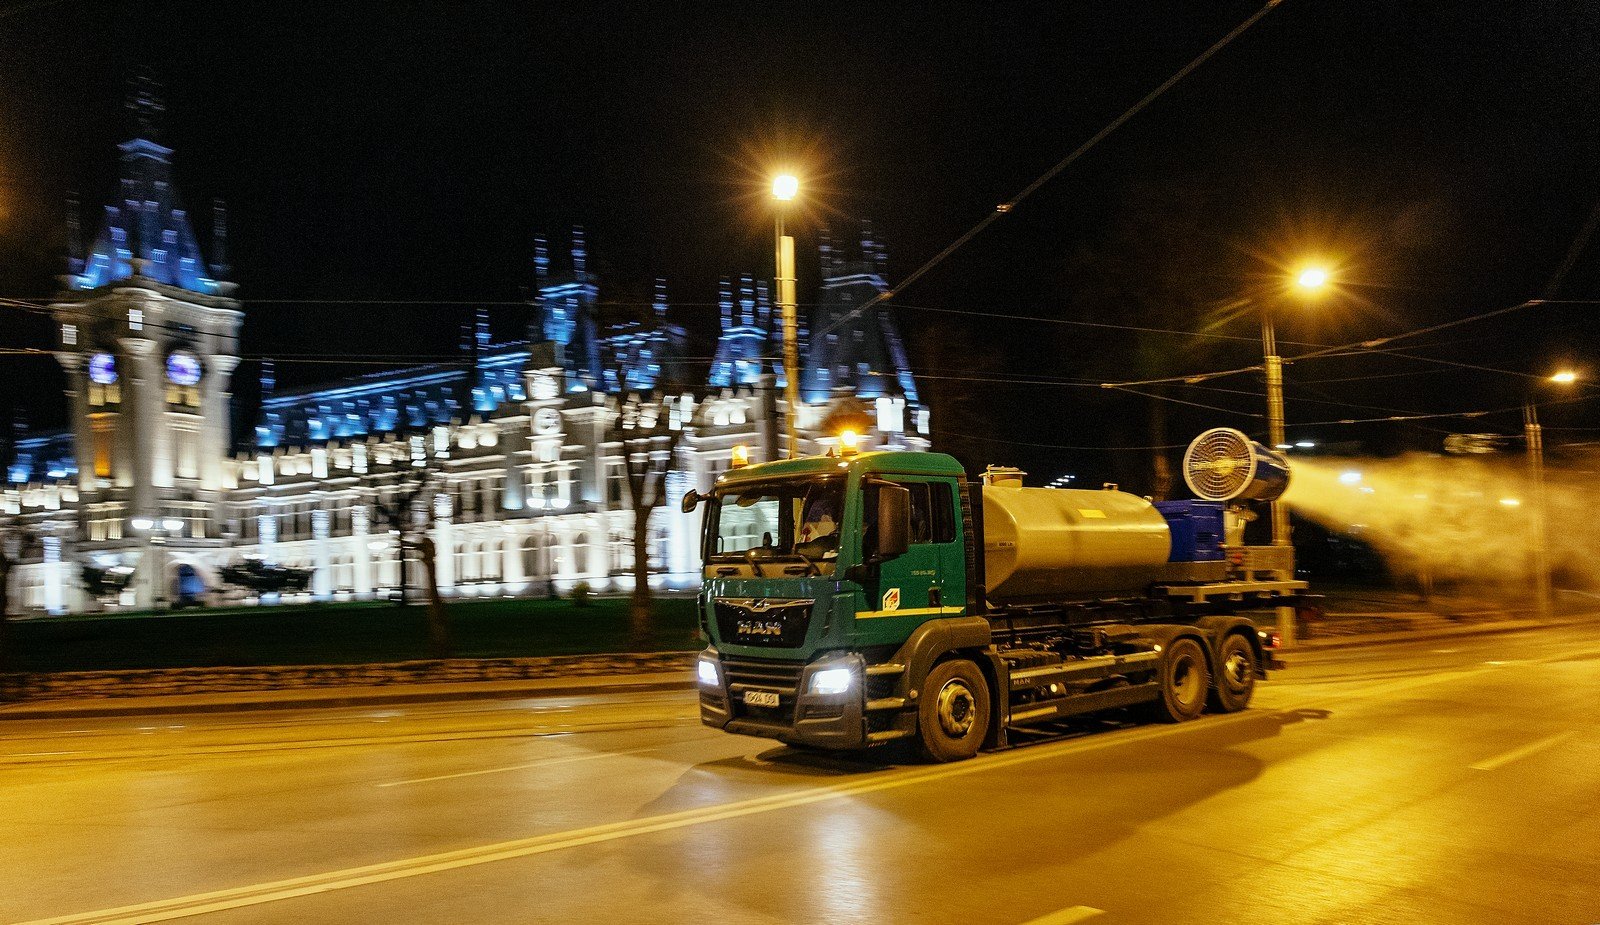  Ce substanțe sunt folosite pentru dezinfectarea străzilor din Iași pe timp de noapte